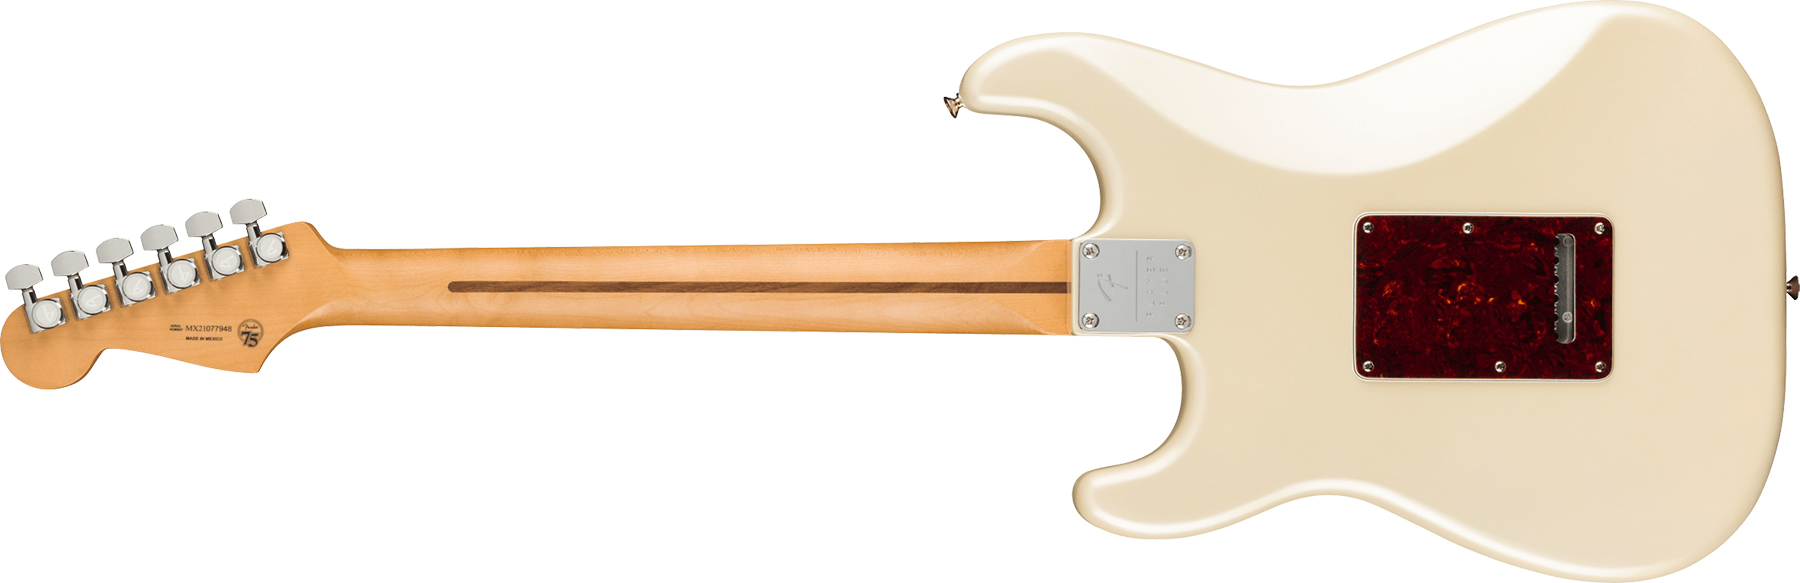 Fender Strat Player Plus Lh Mex Gaucher 3s Trem Mn - Olympic Pearl - E-Gitarre für Linkshänder - Variation 1